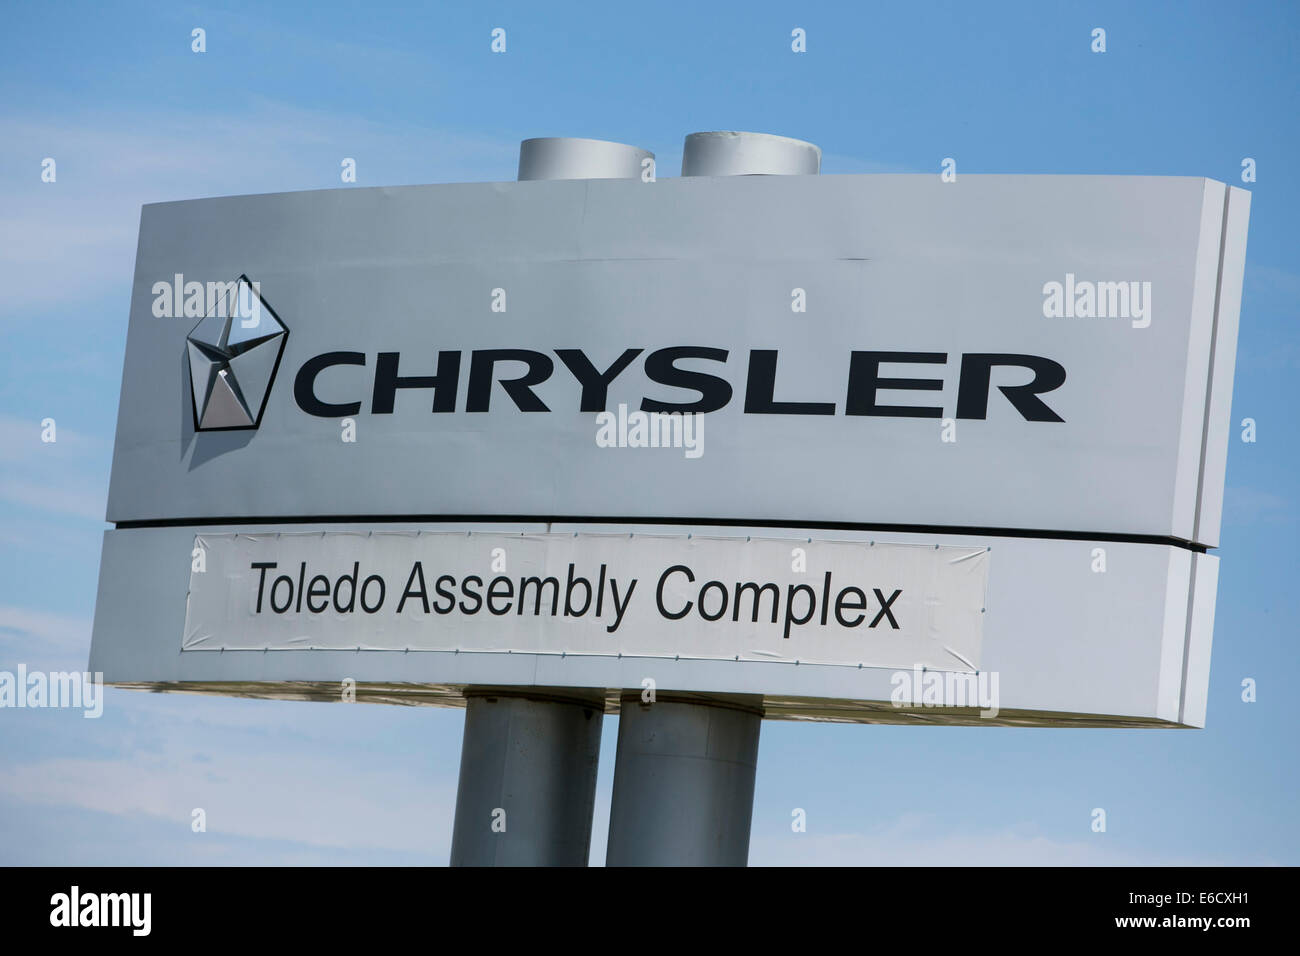 El complejo conjunto de Toledo de Chrysler en Toledo, Ohio. La planta de fabricación de vehículos Jeep. Foto de stock